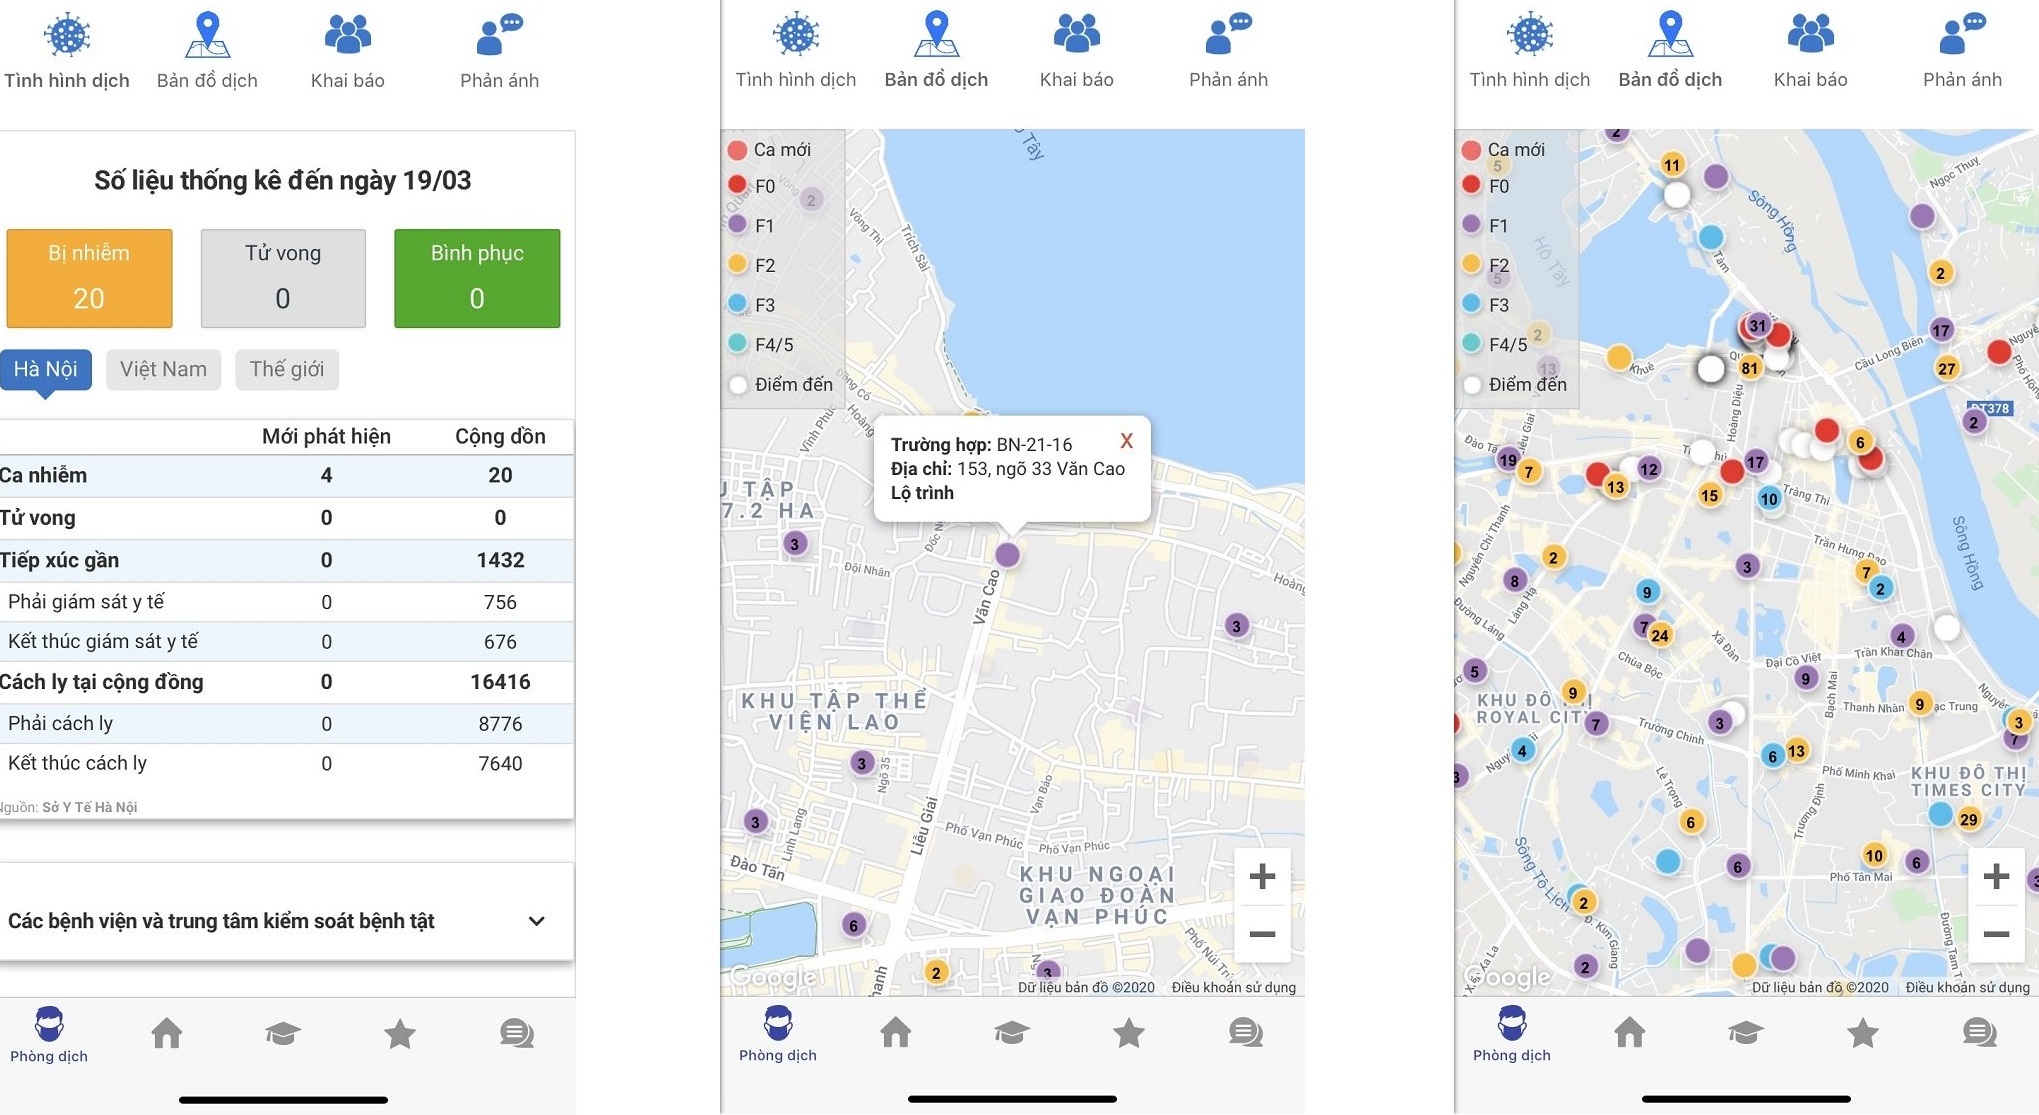 Nâng cấp ứng dụng Hà Nội SmartCity thành kênh tương tác giữa người dân và chính quyền thành phố